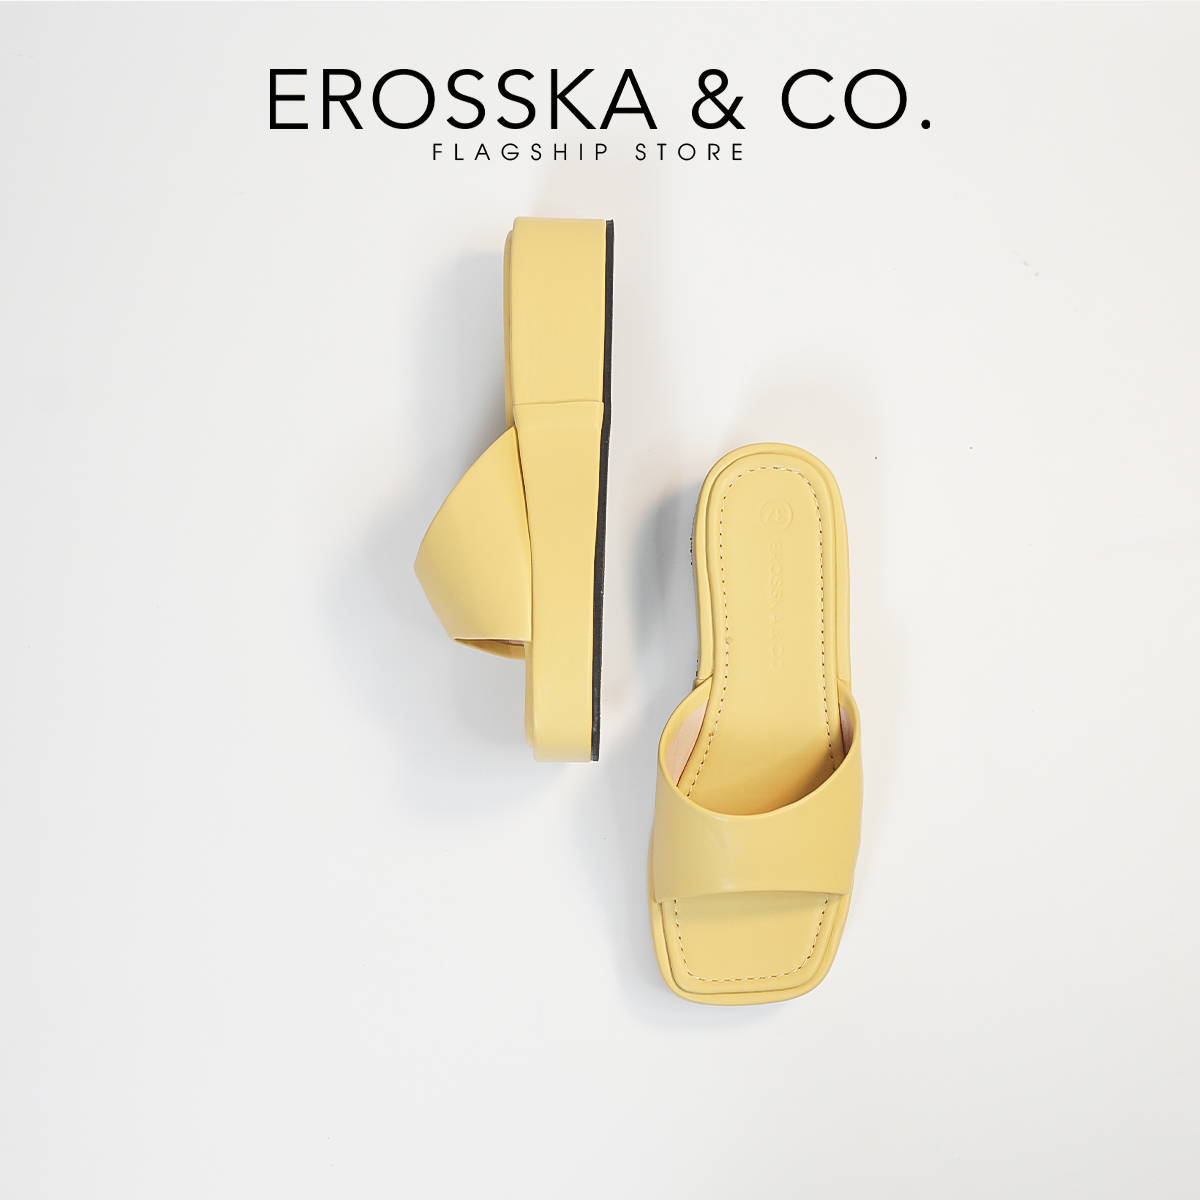 Erosska - Dép nữ thời trang đế xuồng quai ngang kiểu dáng cơ bản - SB021